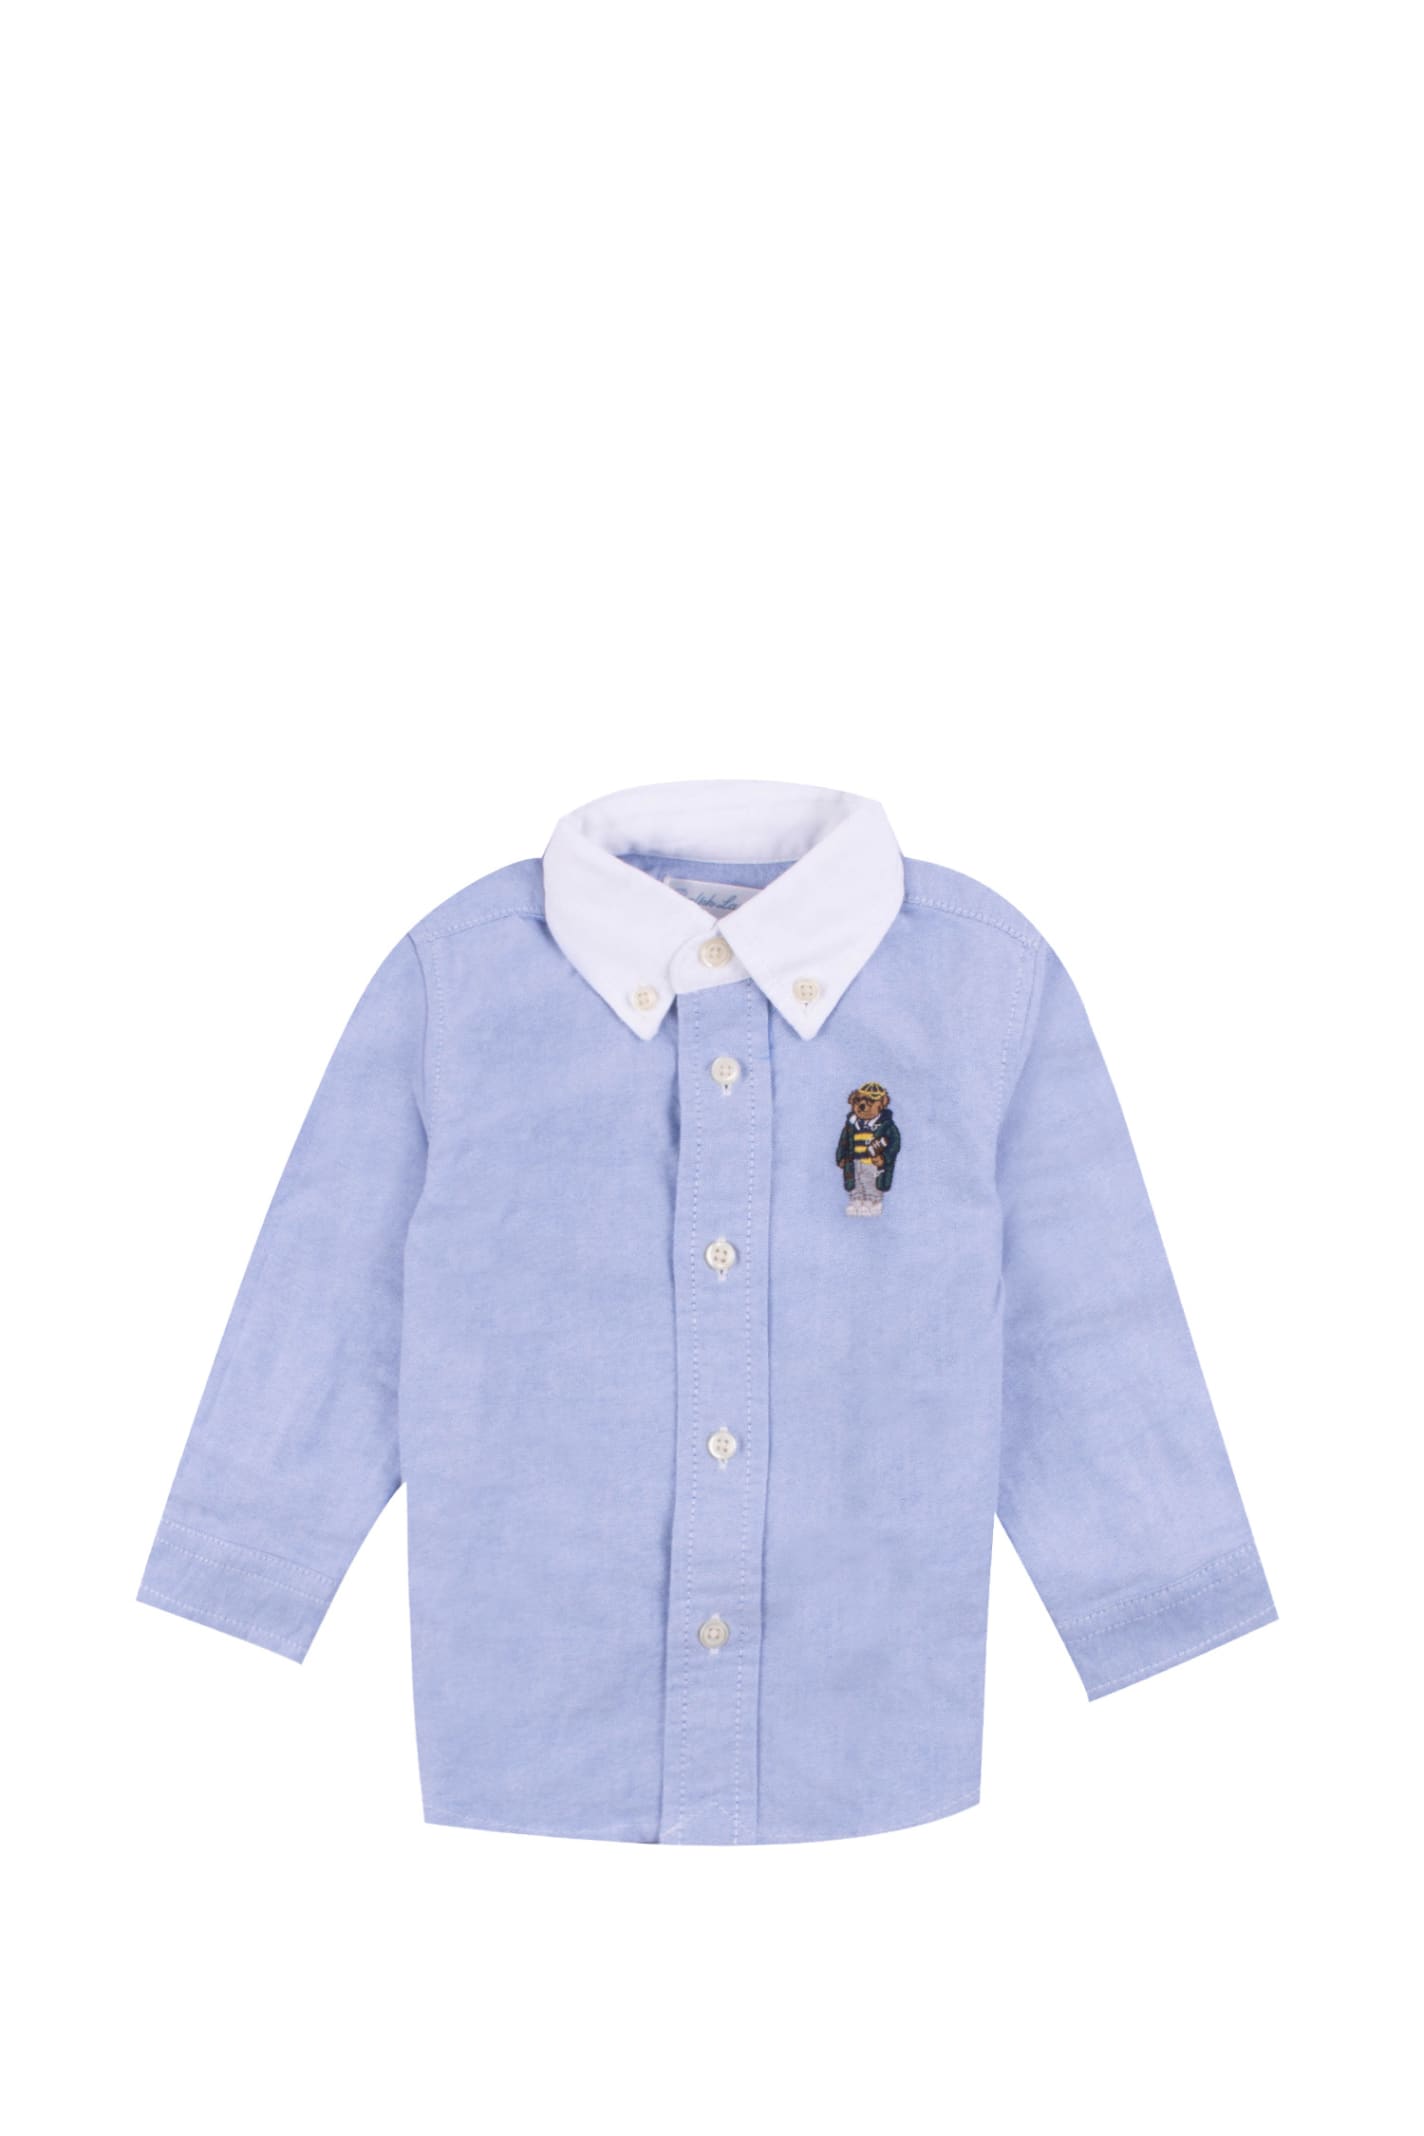 Ralph Lauren Babies' Cotton Shirt In Light Blue